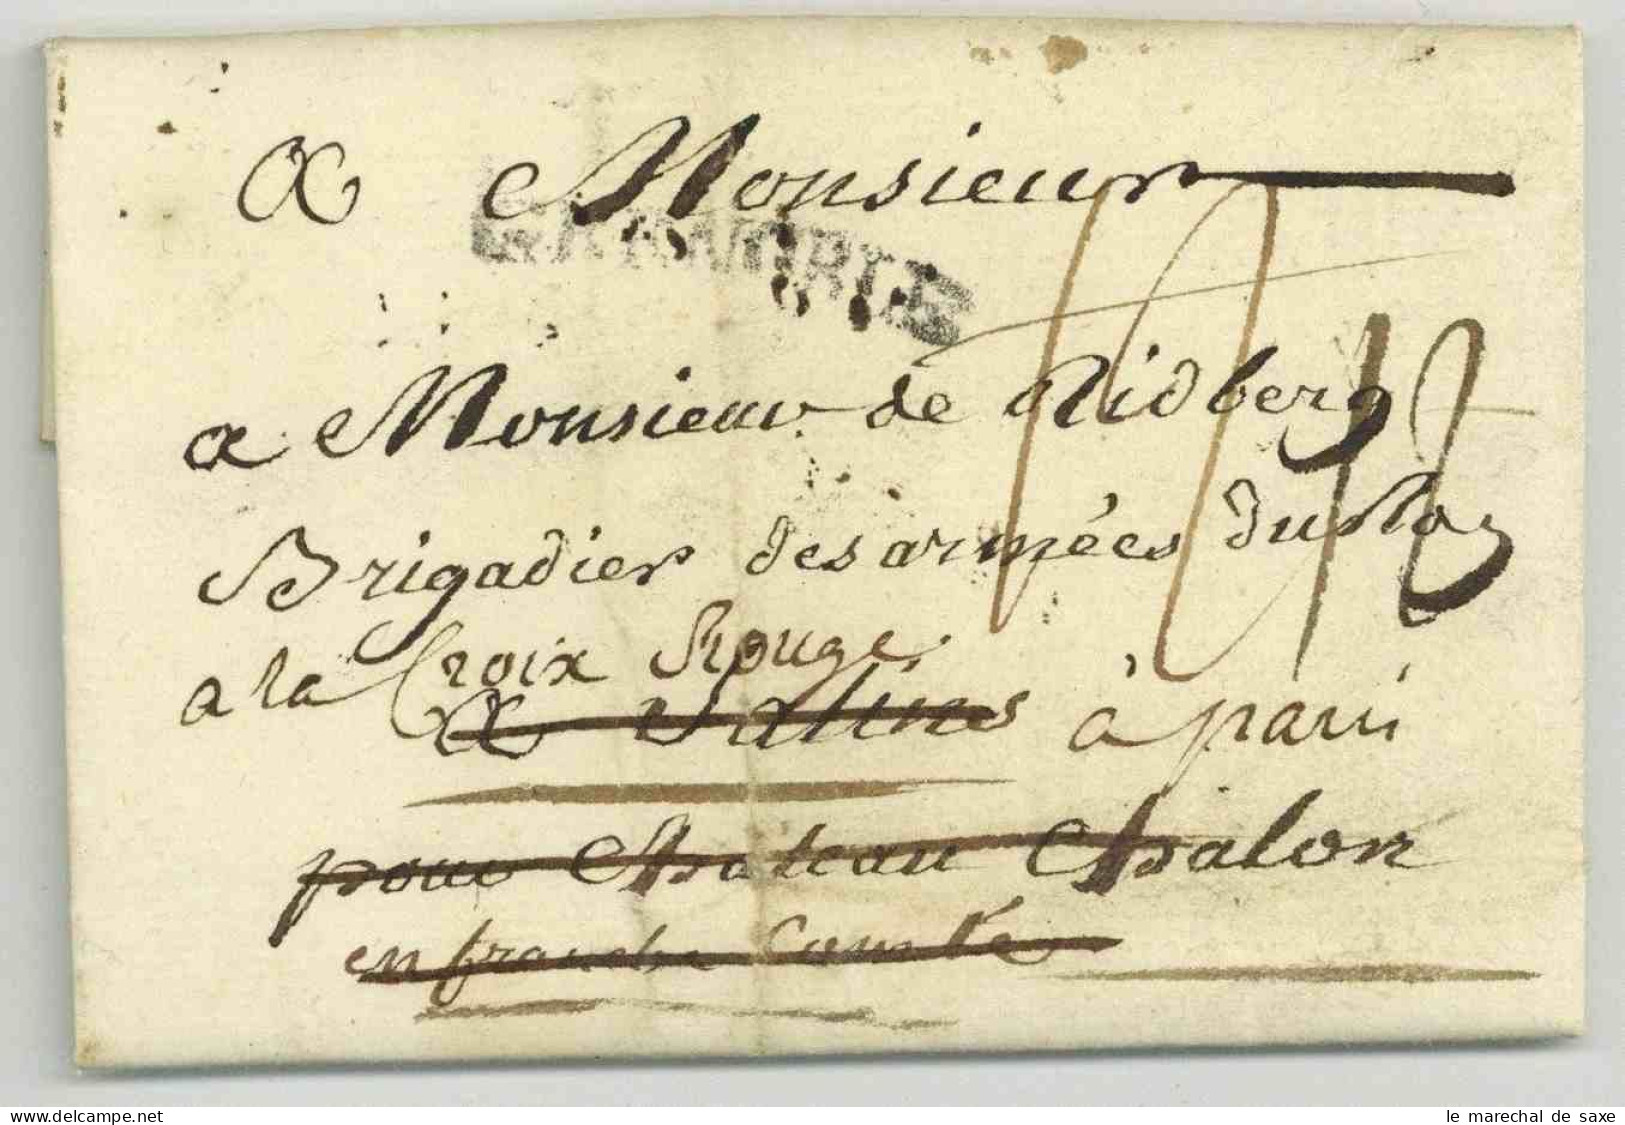 Pierre Joseph De Bourcet (1700-1780) Ingenieur Cartographe Lieutenant General Autographe Grenoble 1779 Deboursé Salins - Personaggi Storici